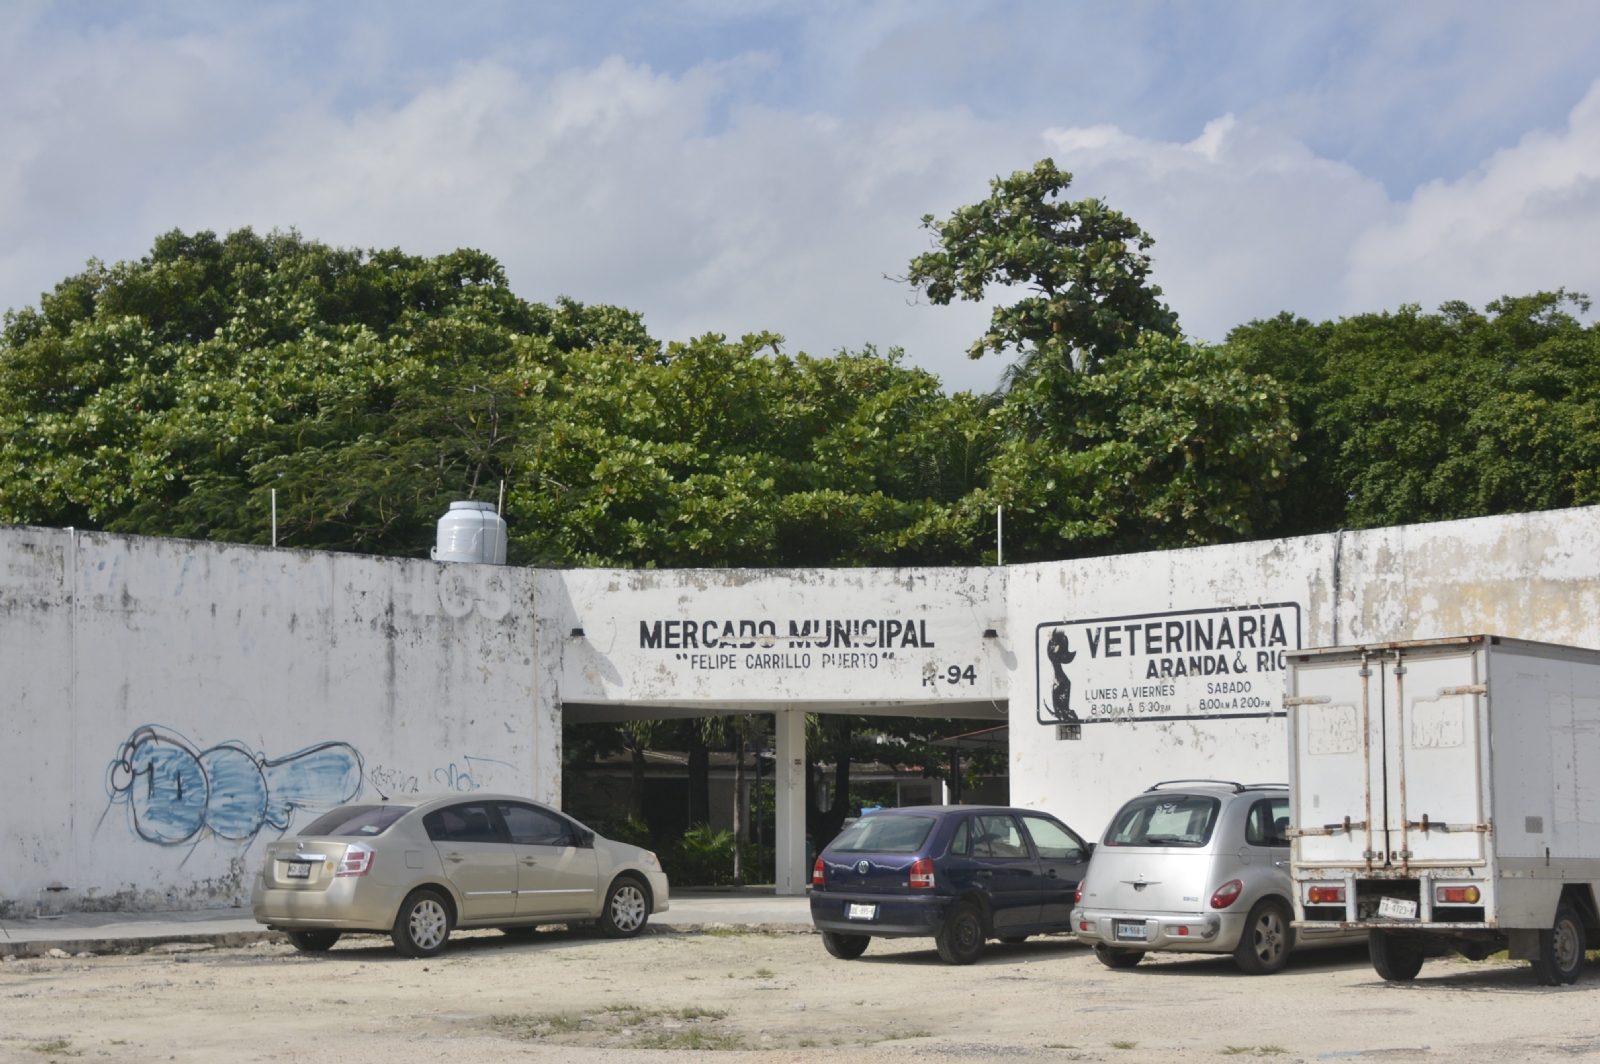 ¿Qué pasó con el mercado municipal Felipe Carrillo Puerto en Cancún? Así luce actualmente: Fotos